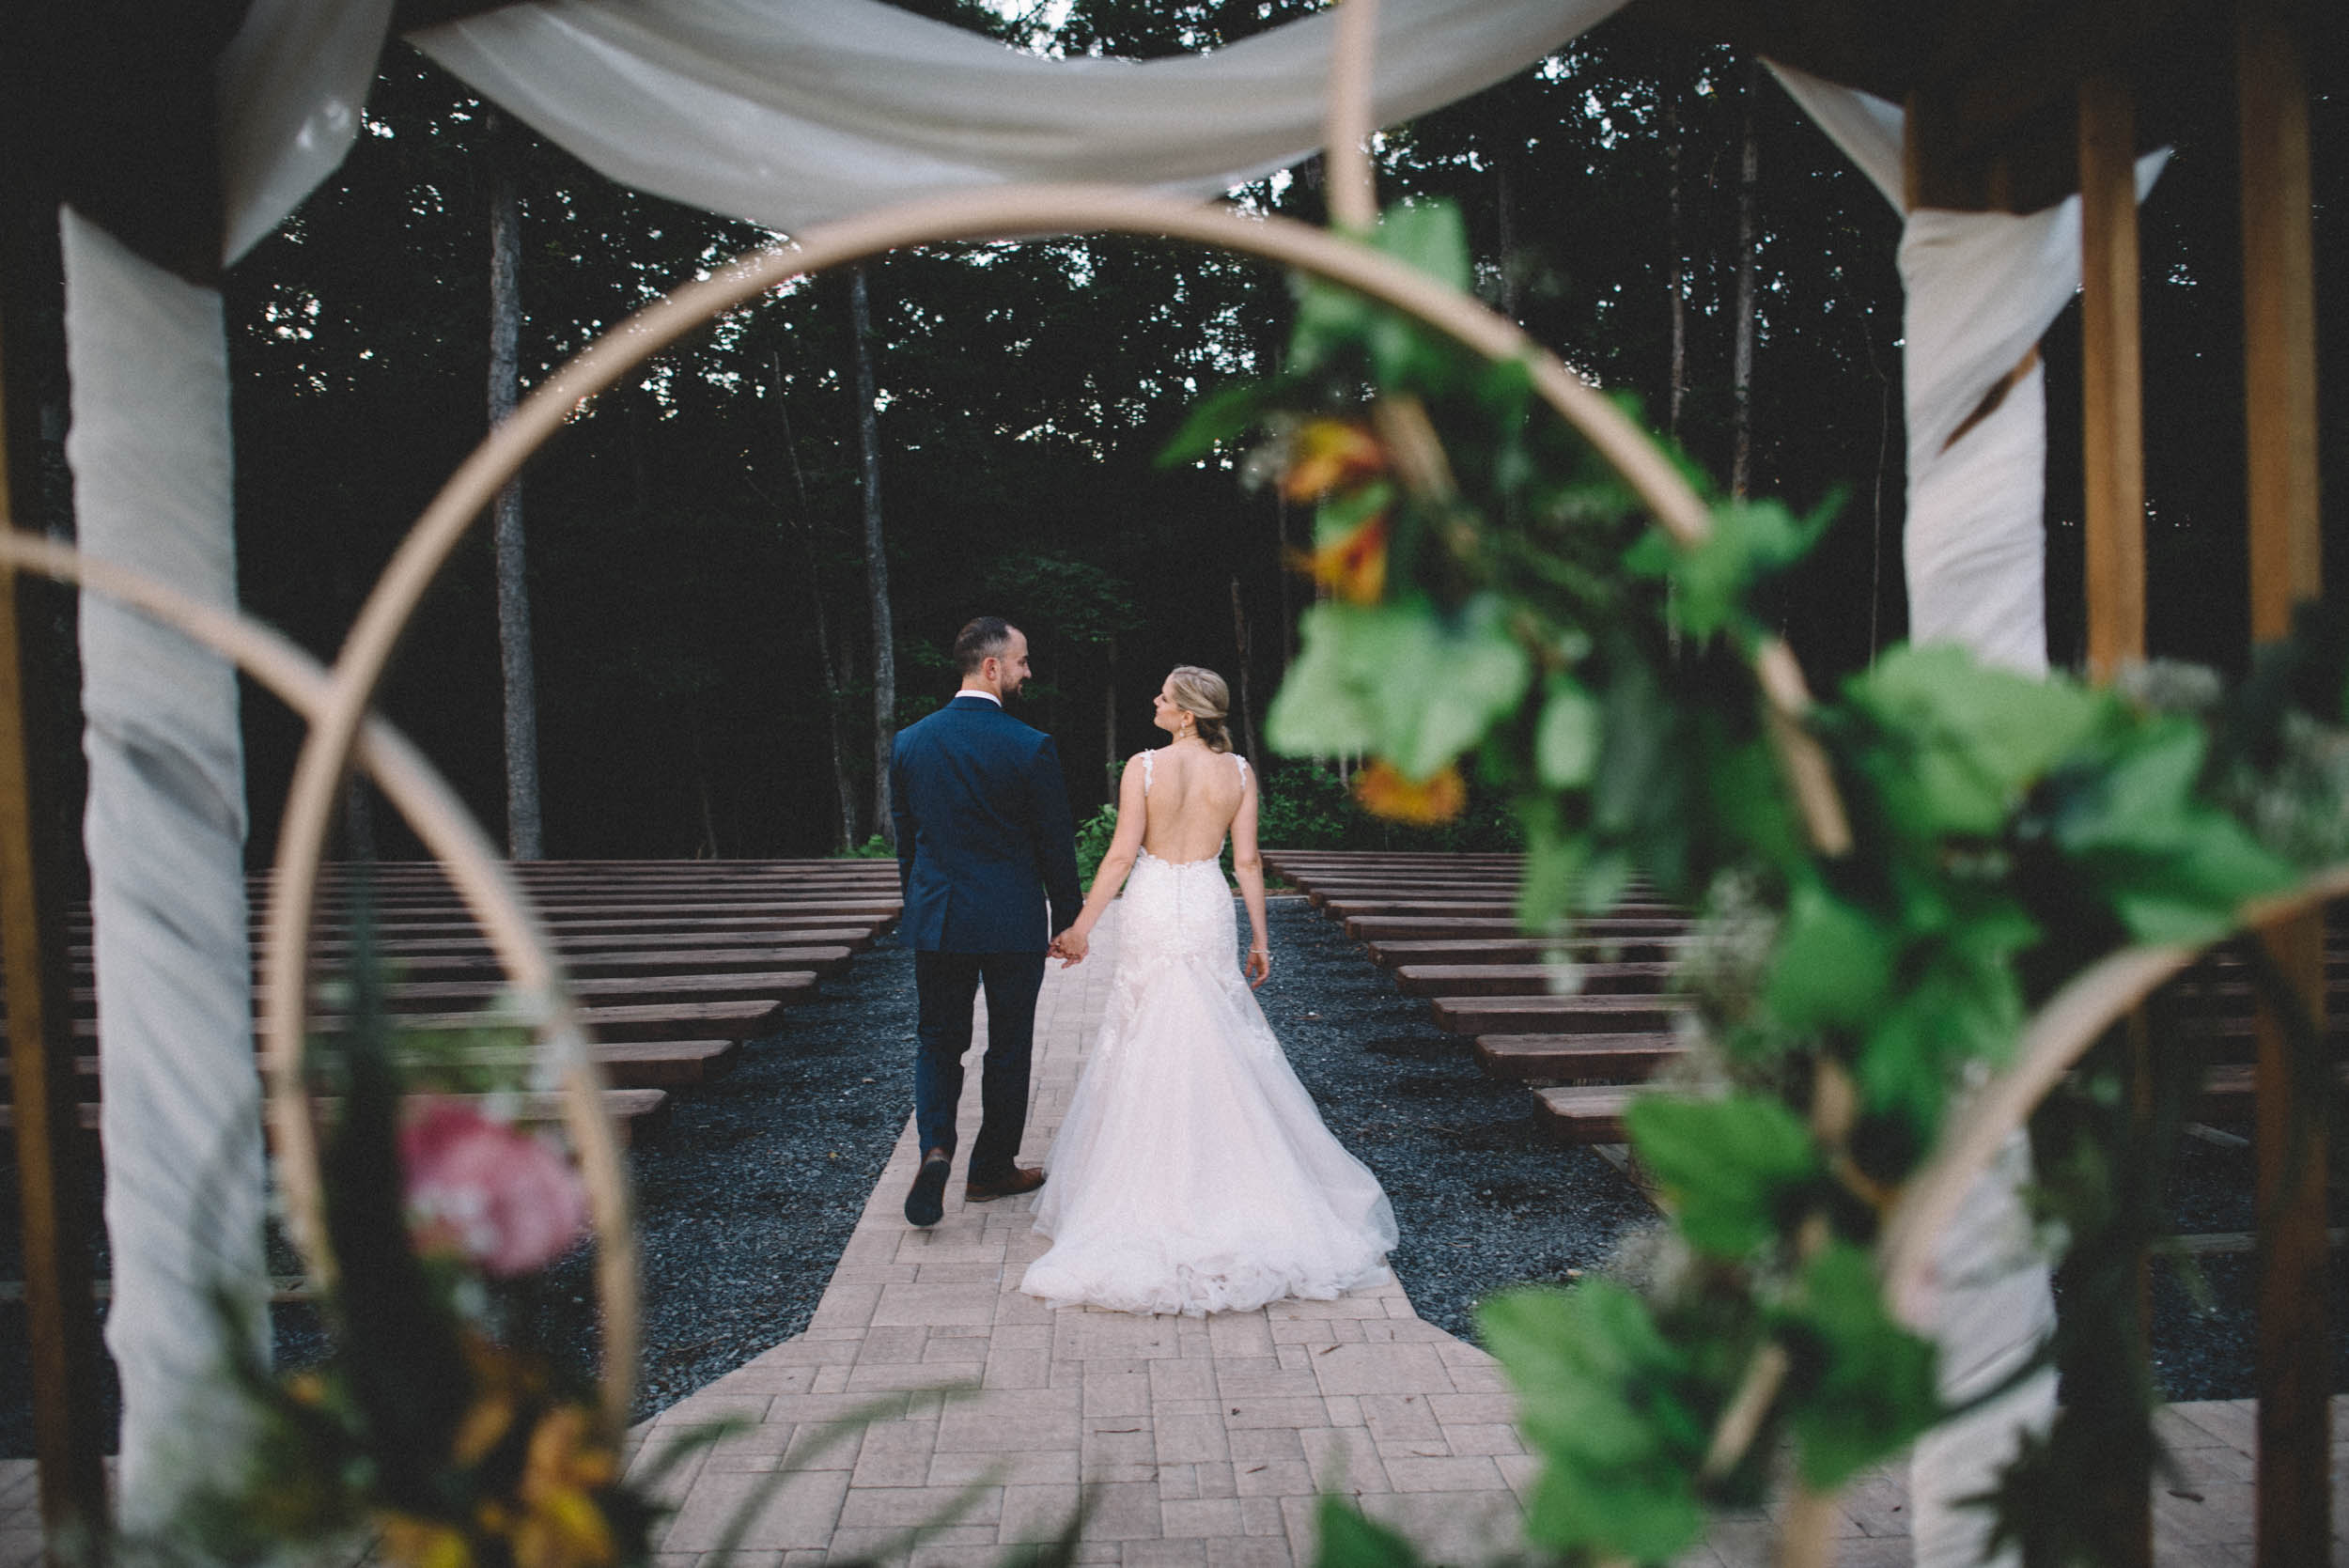 Wedding photographer at Shenandoah Woods